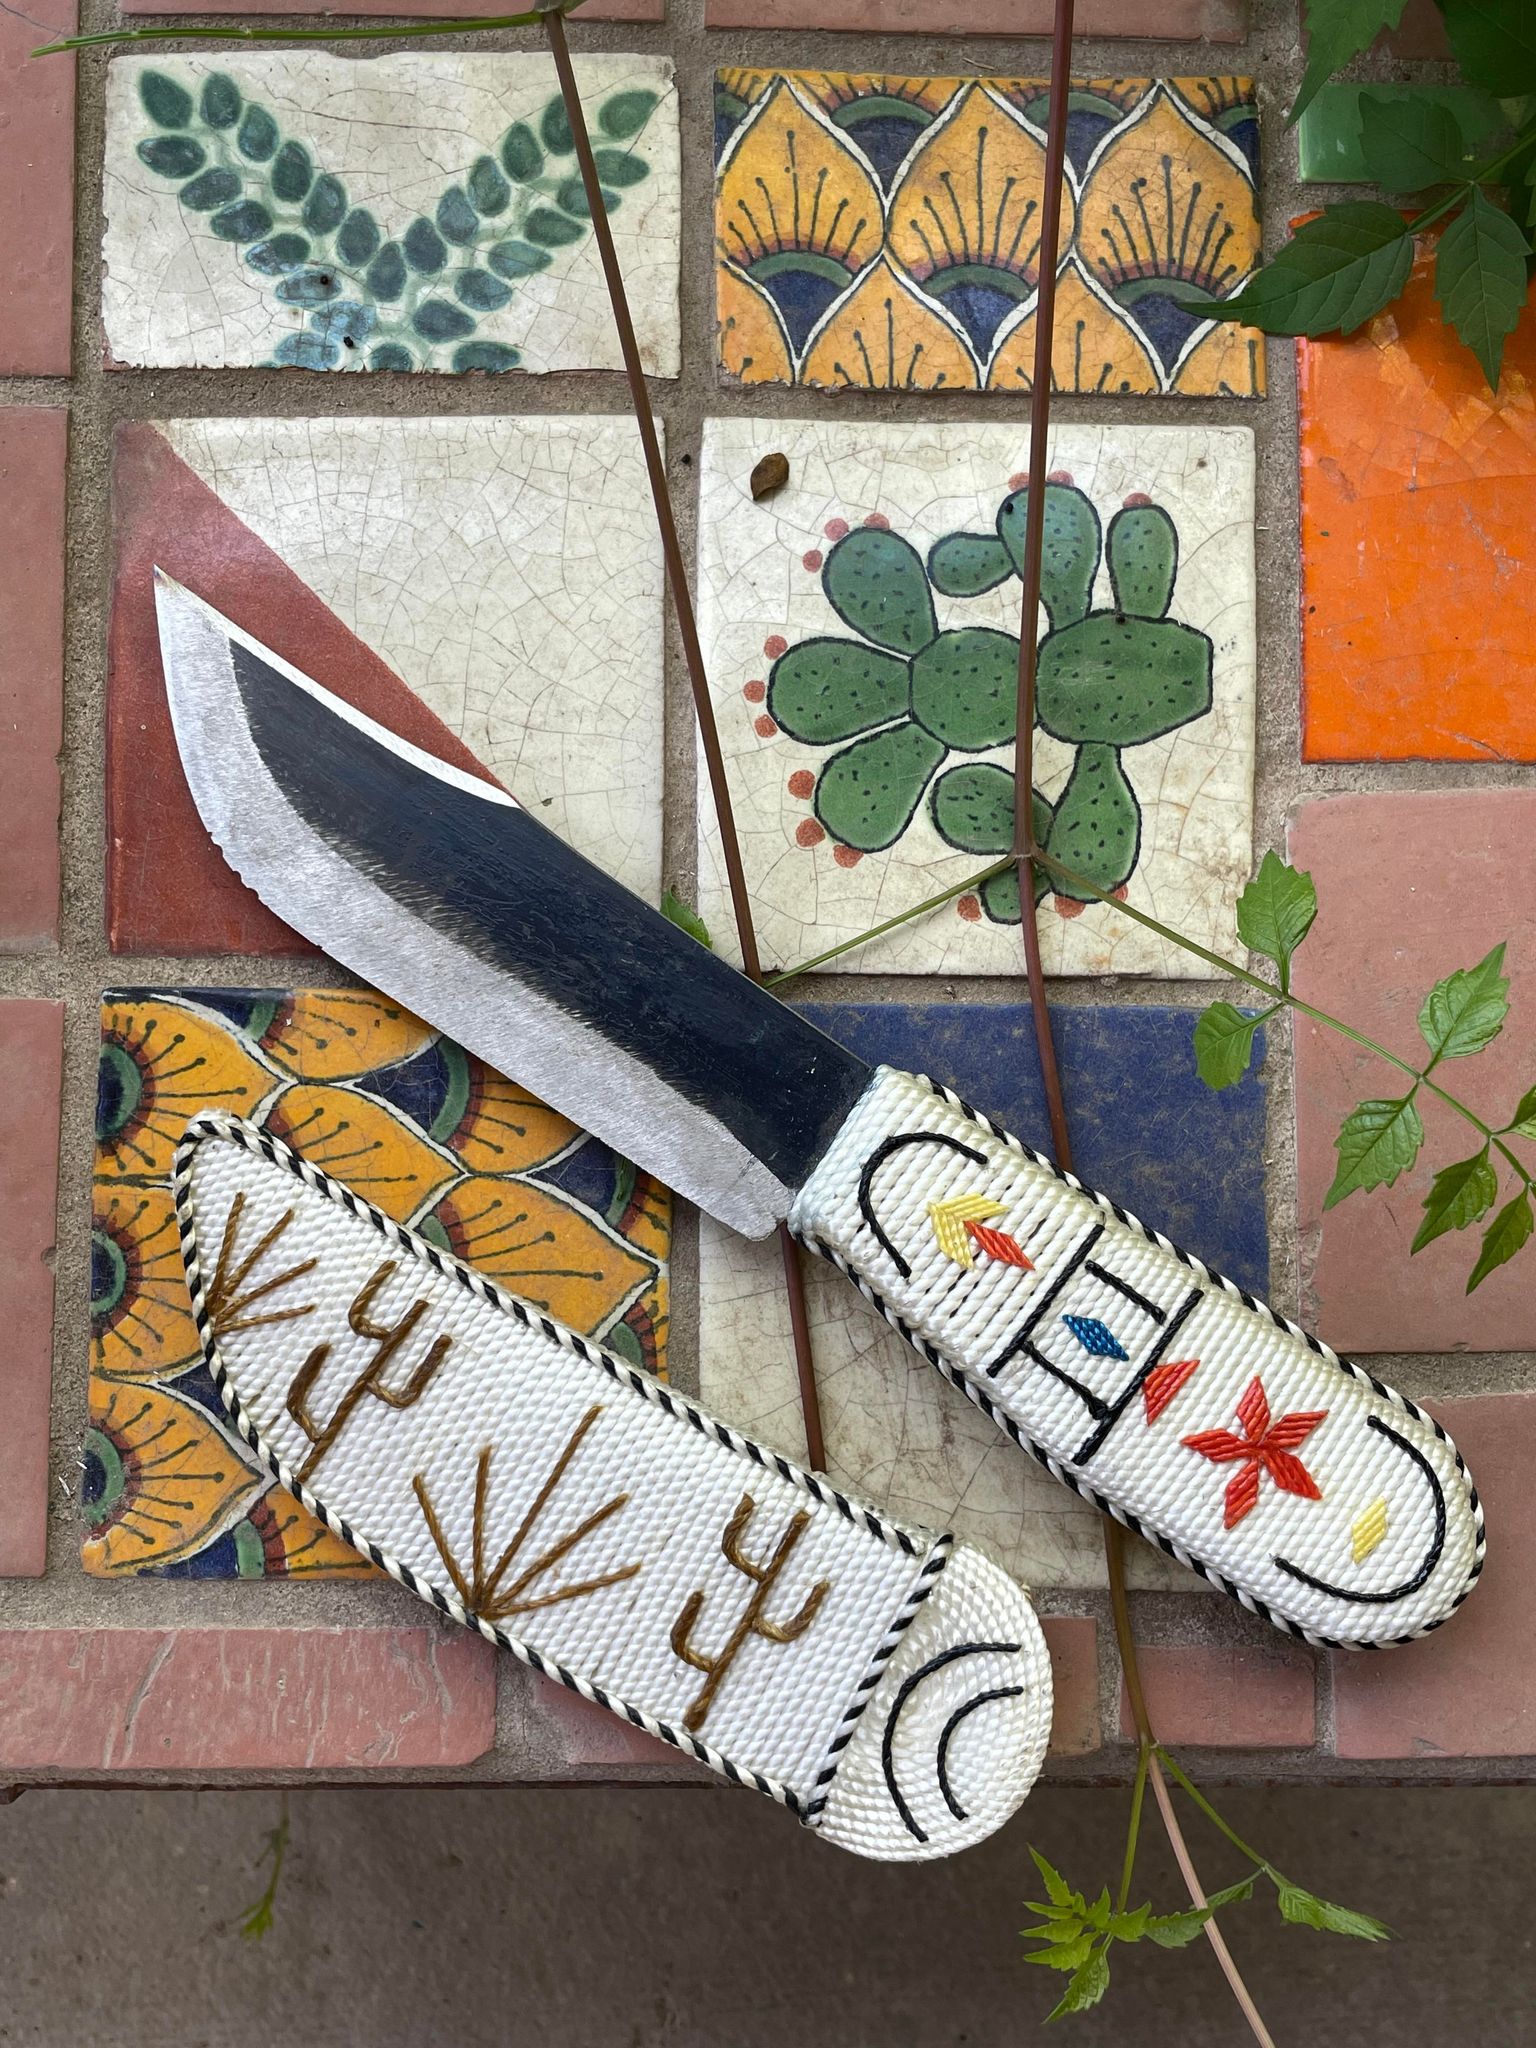 Handmade Knife and Sheath